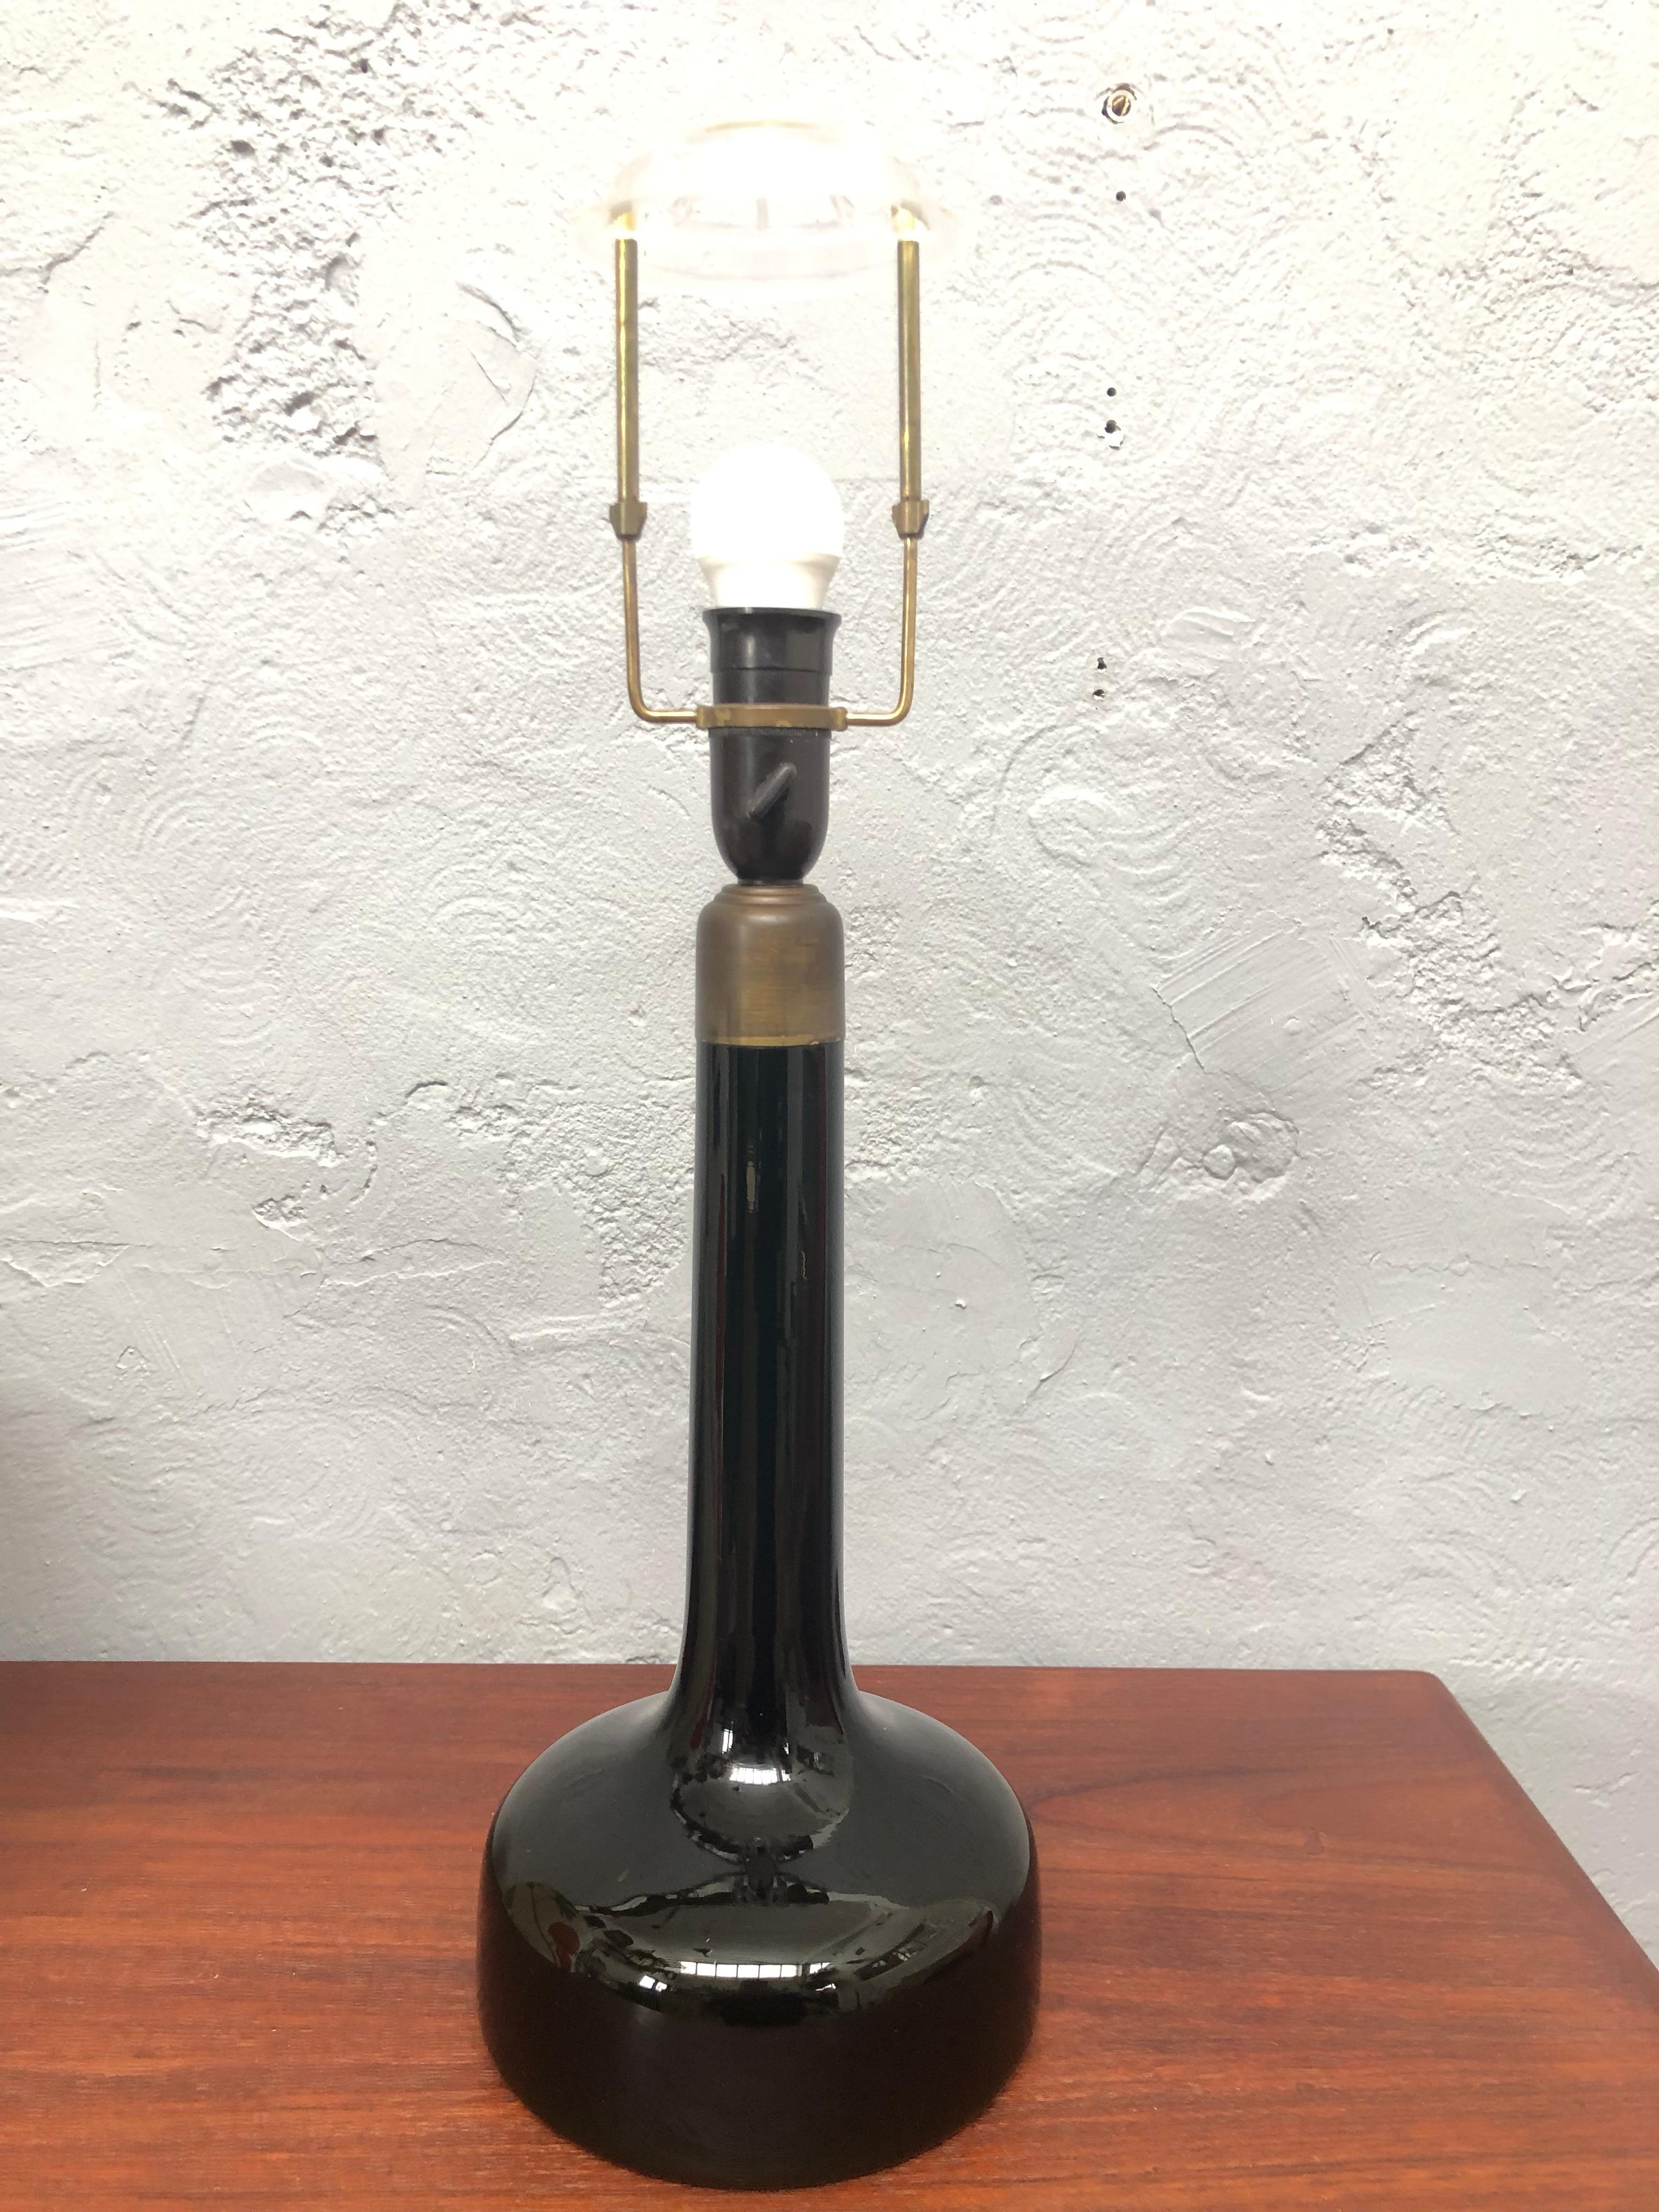 Eine Vintage-Tischlampe aus mundgeblasenem Glas, entworfen von Biilman-Petersen für Le Klint aus Dänemark im Jahr 1948. 
Das dunkelgrüne Glas ist in hervorragendem Vintage-Zustand mit altersbedingten Gebrauchsspuren. 
Sie wurde mit gedrehtem